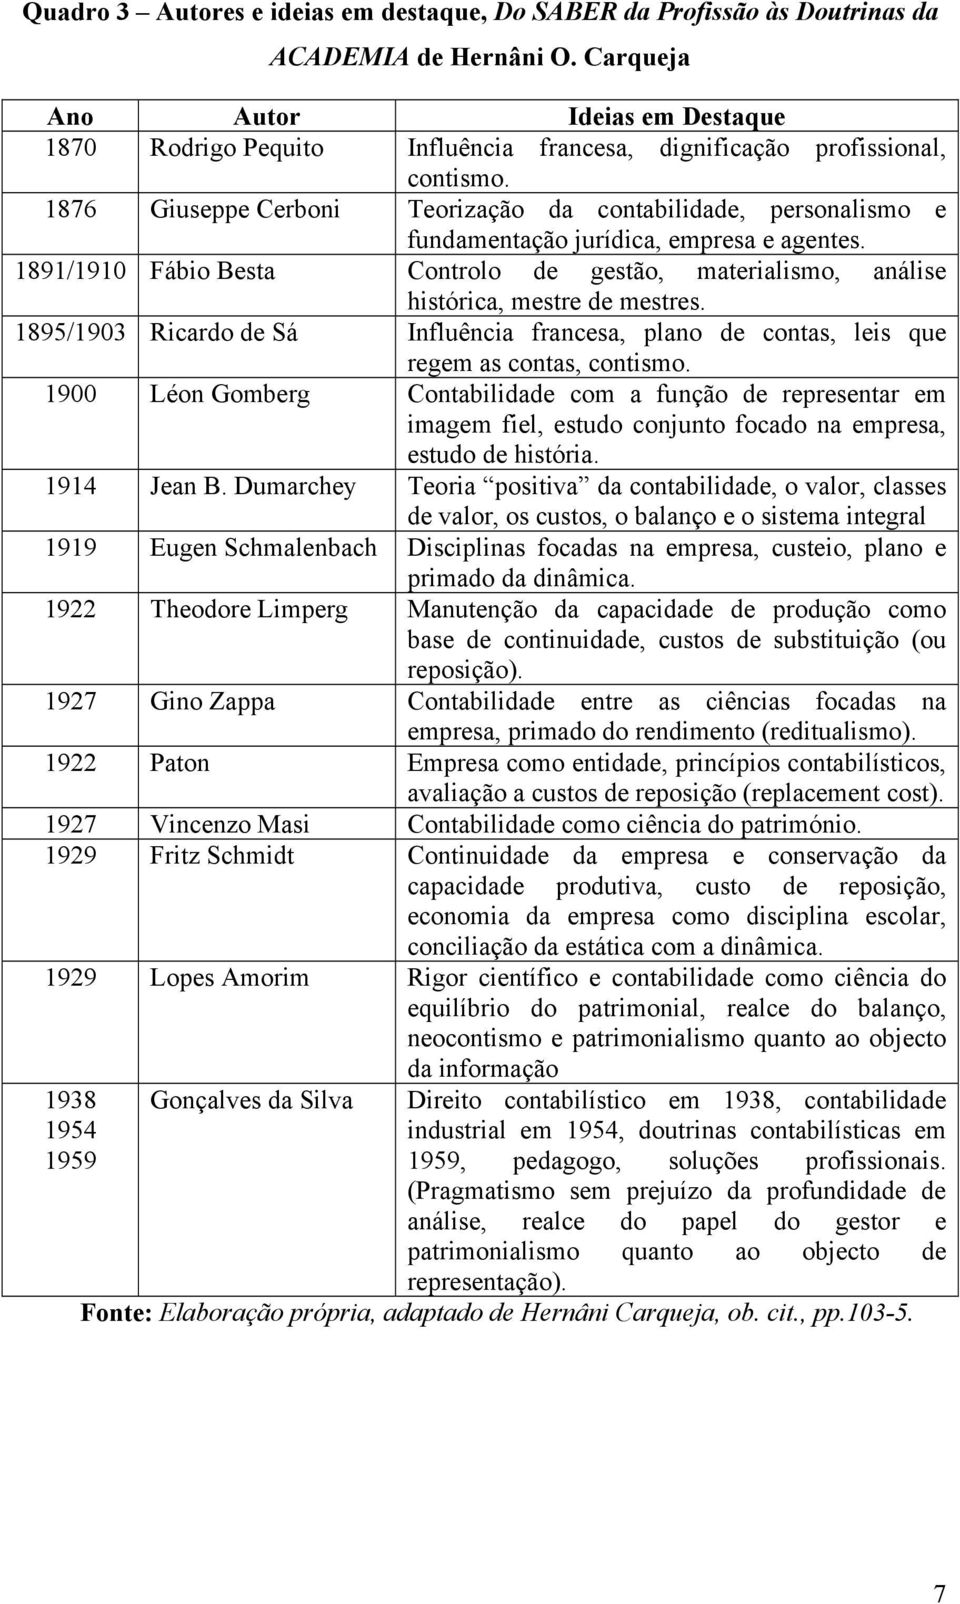 1876 Giuseppe Cerboni Teorização da contabilidade, personalismo e fundamentação jurídica, empresa e agentes.